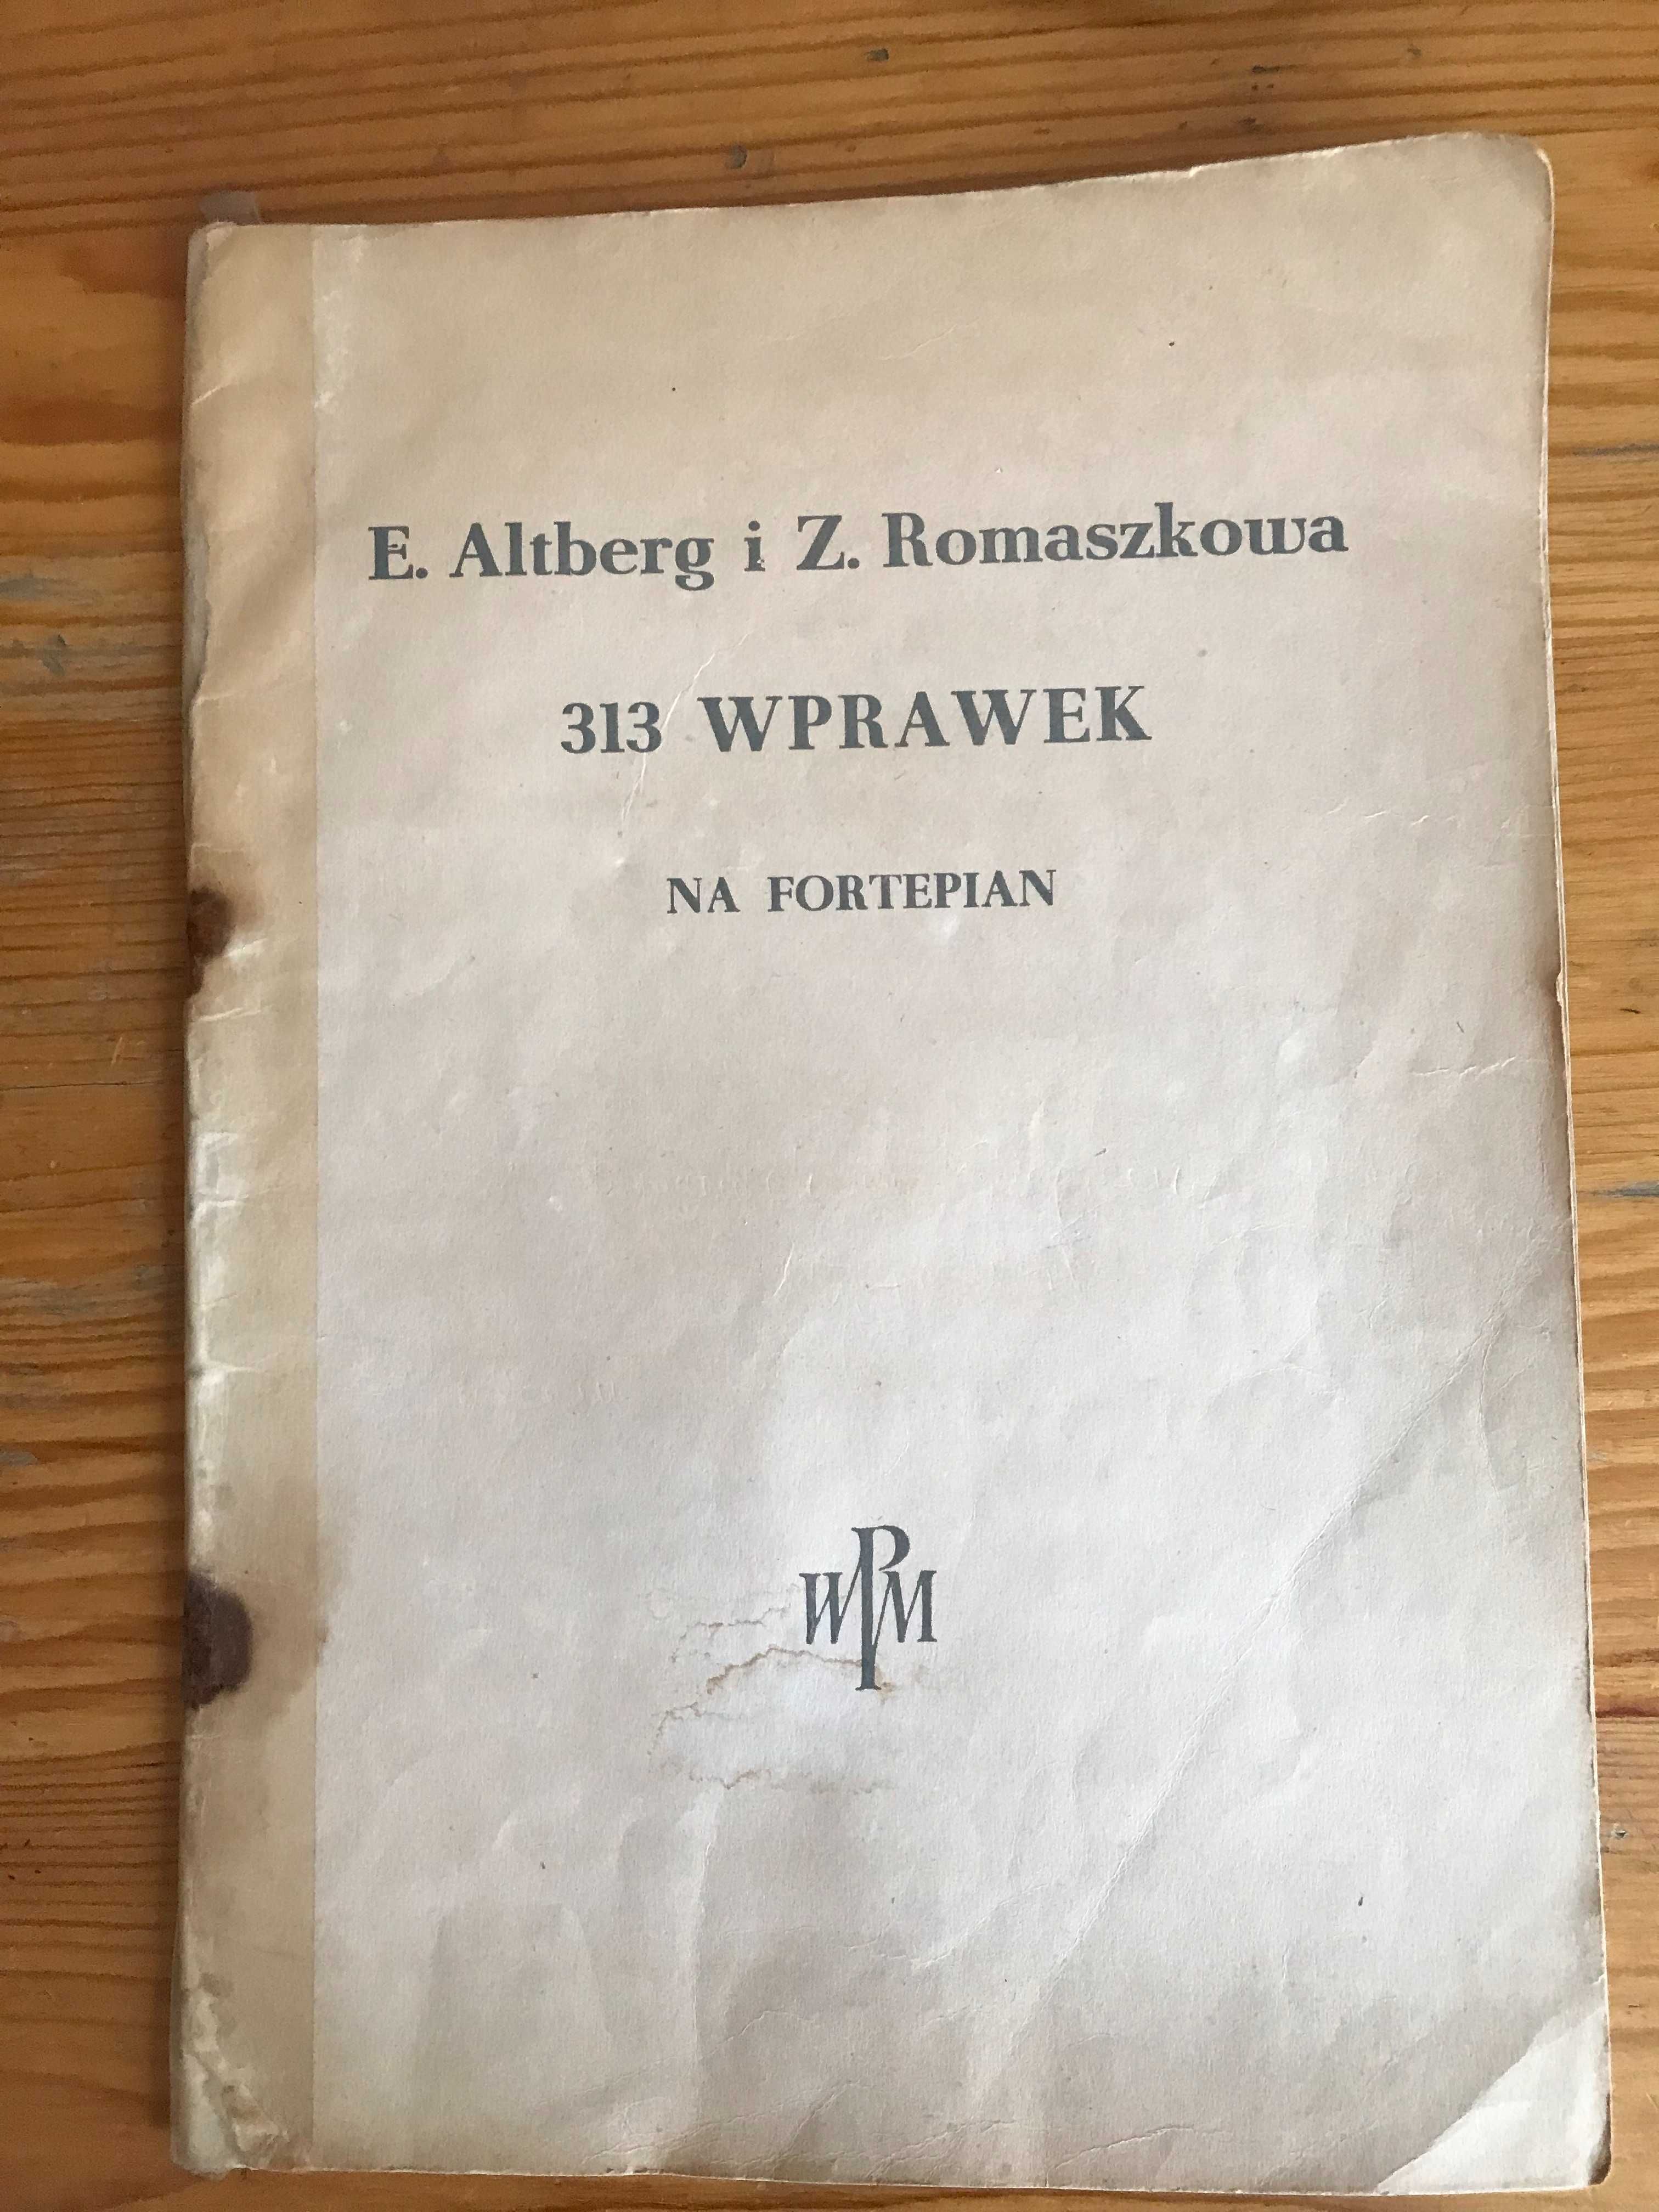 313 wprawek na fortepian - E. Altberg i Z. Romaszkowa